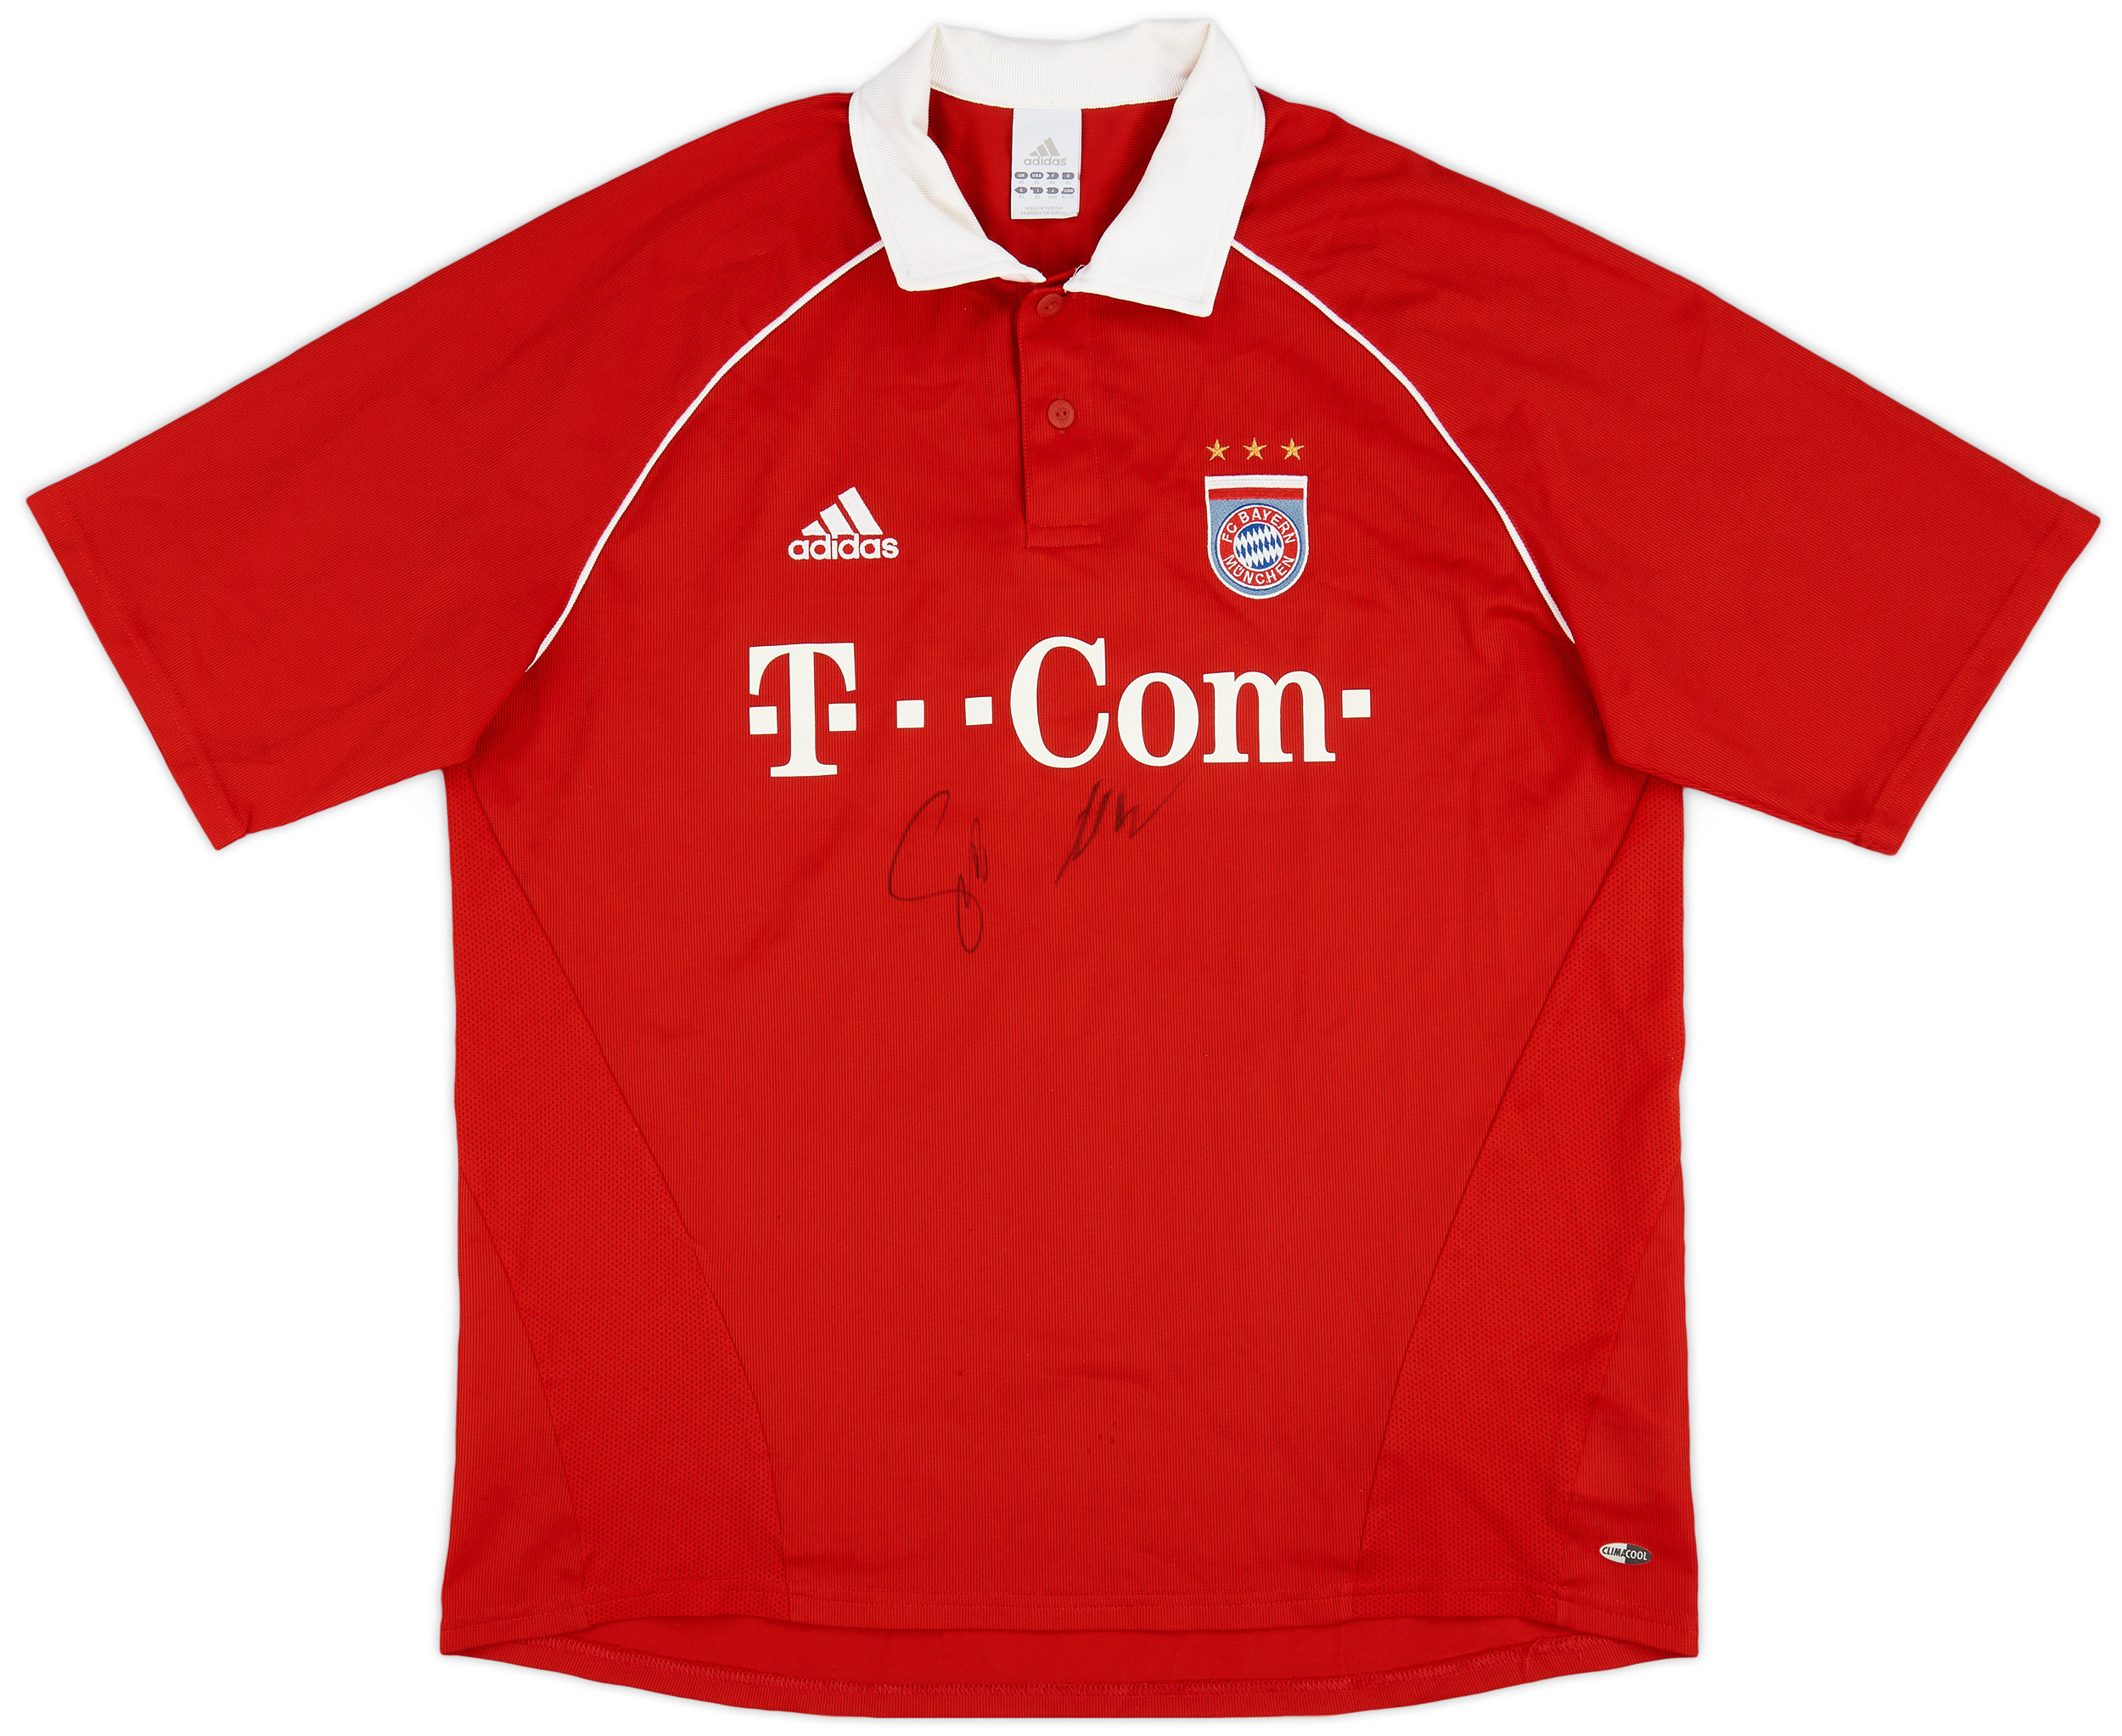 2005-06 Bayern Munich Signed Home Shirt - 8/10 - ()